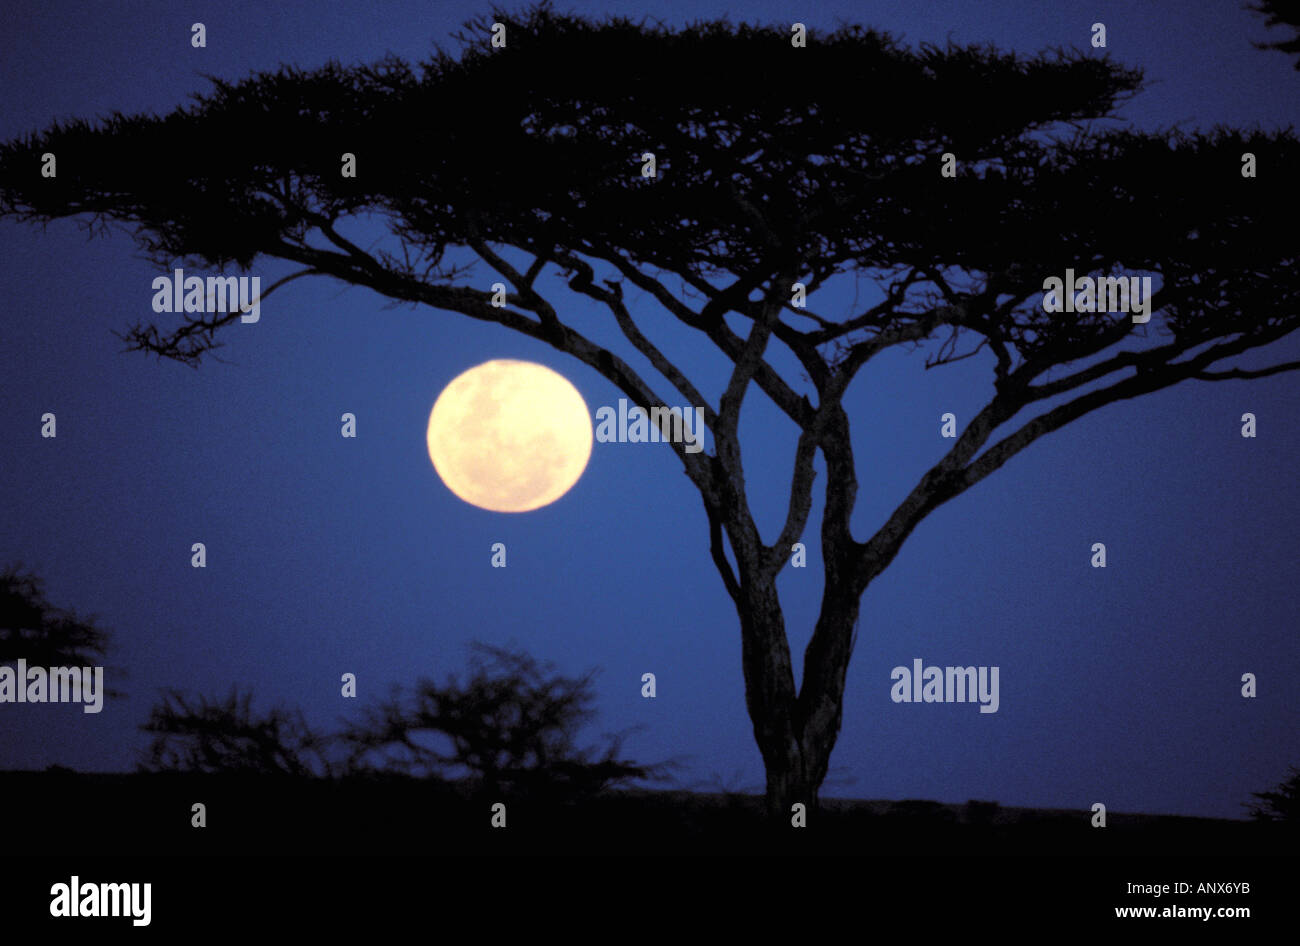 Africa, Tanzania, Tarangire. Acacia tree in moonlight Stock Photo